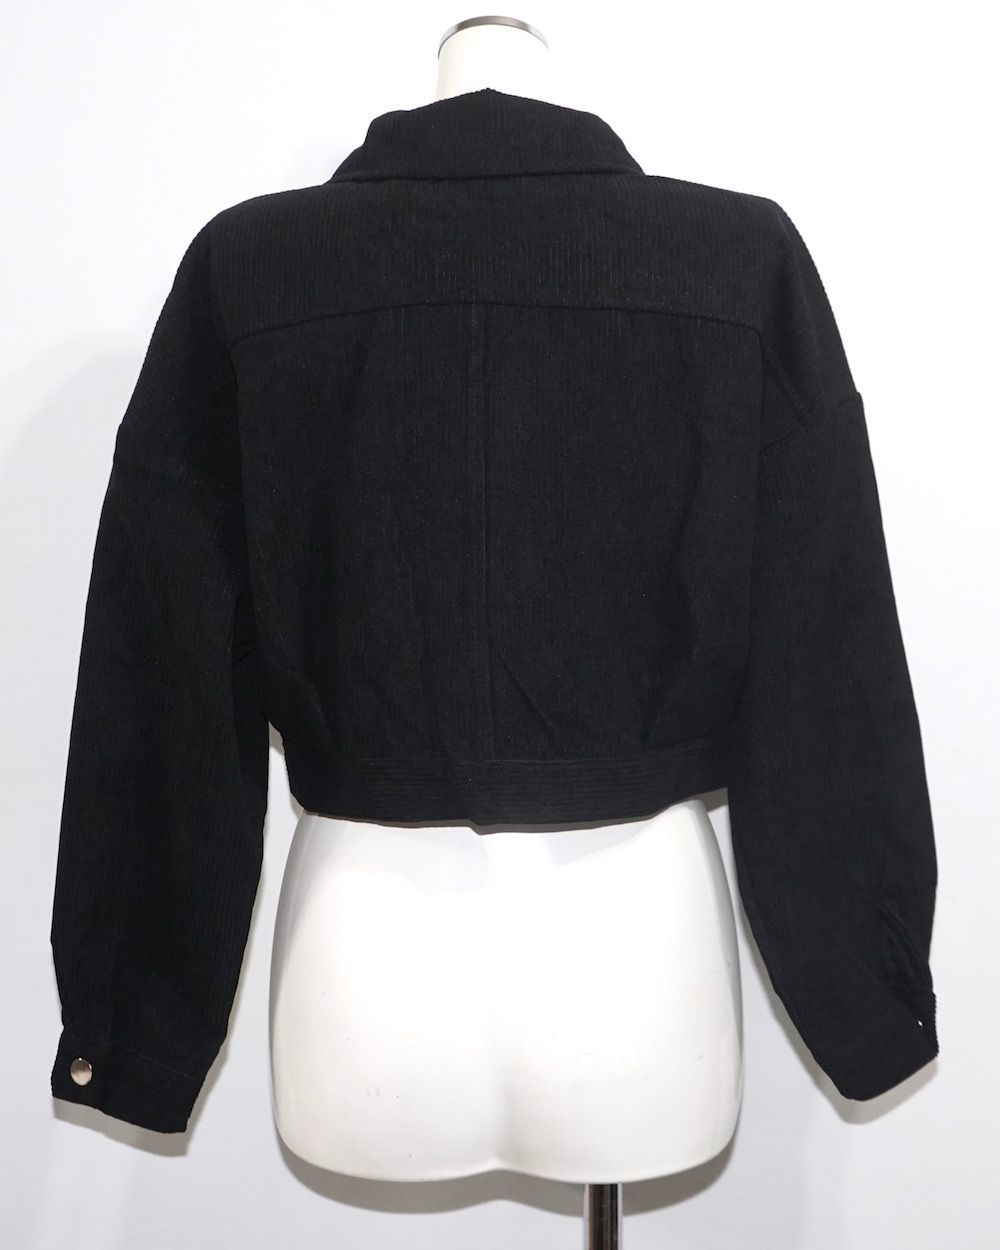 blackup ジャケット スカート セットアップ set - テーラードジャケット